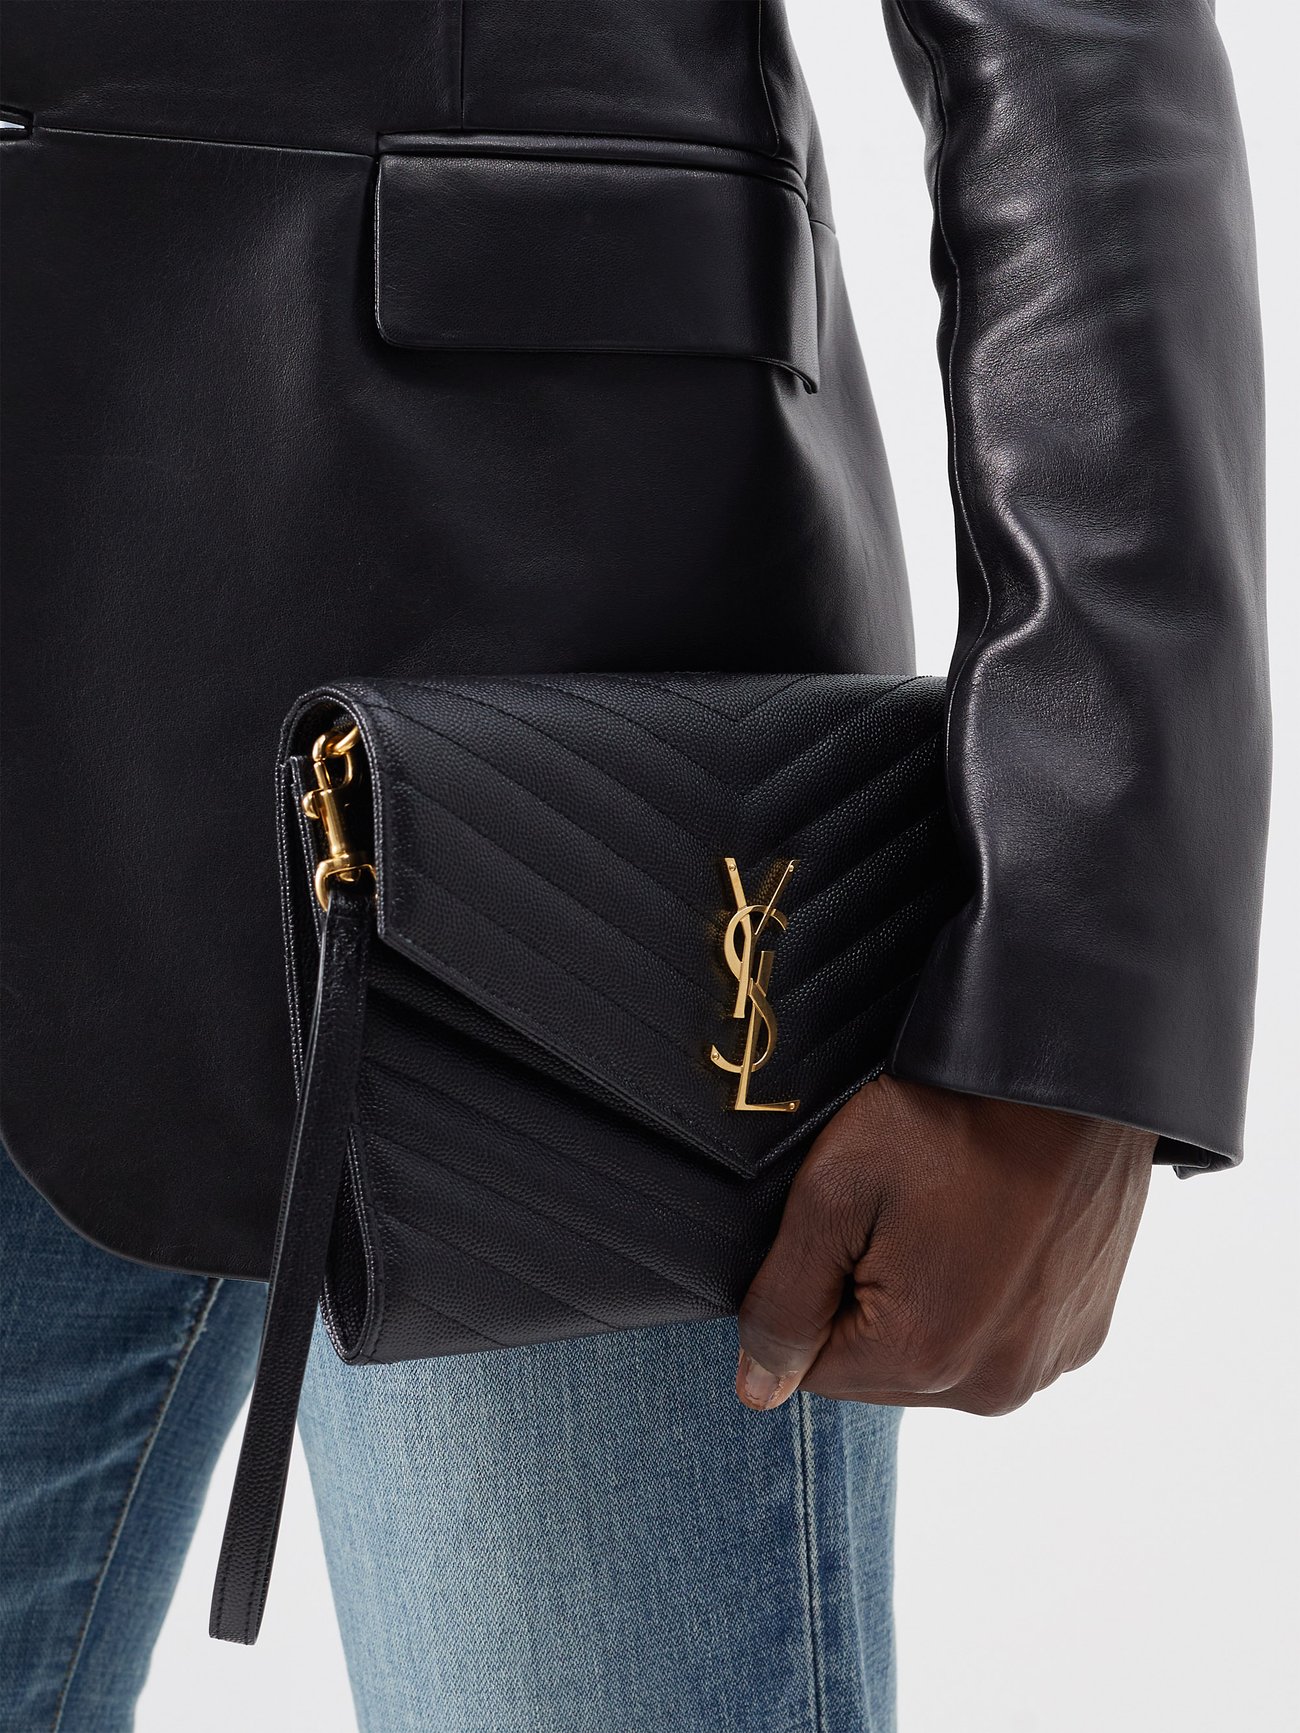 YSL-plaque grained-leather wristlet clutch bag | Saint Laurent